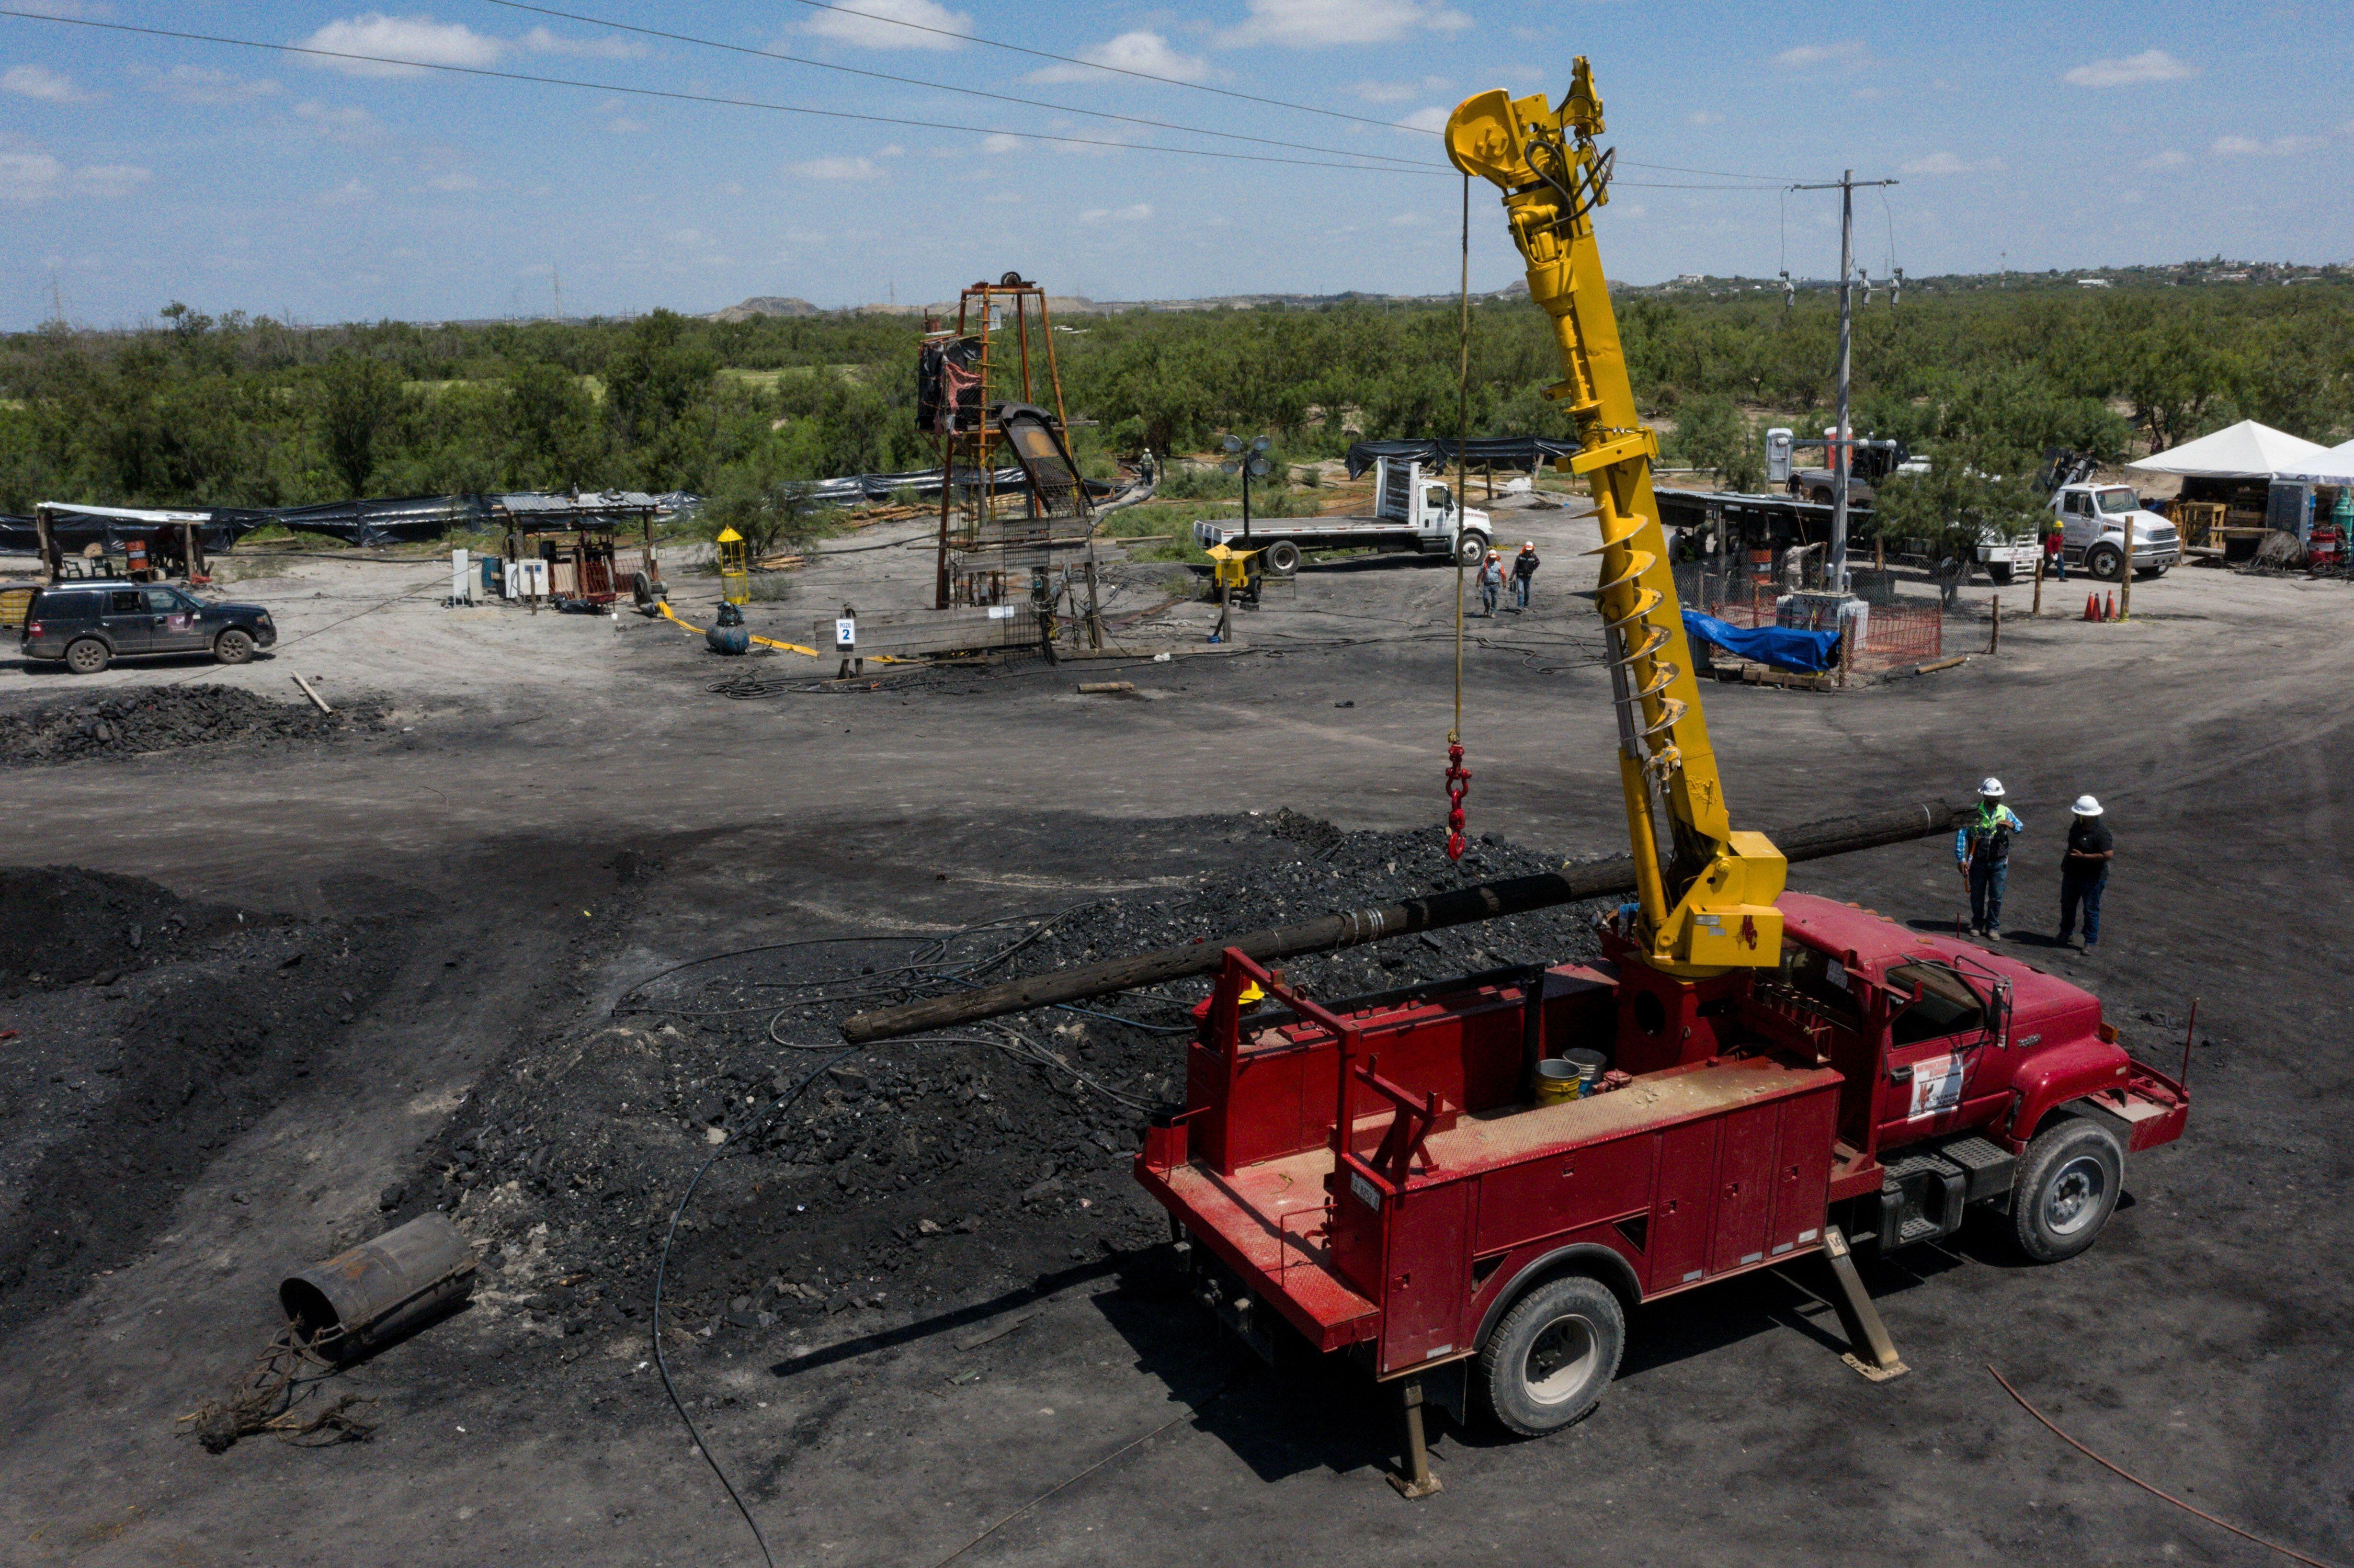 Derrumbe en mina de Coahuila: Protección civil revisa avances en trabajos de rescate de mineros